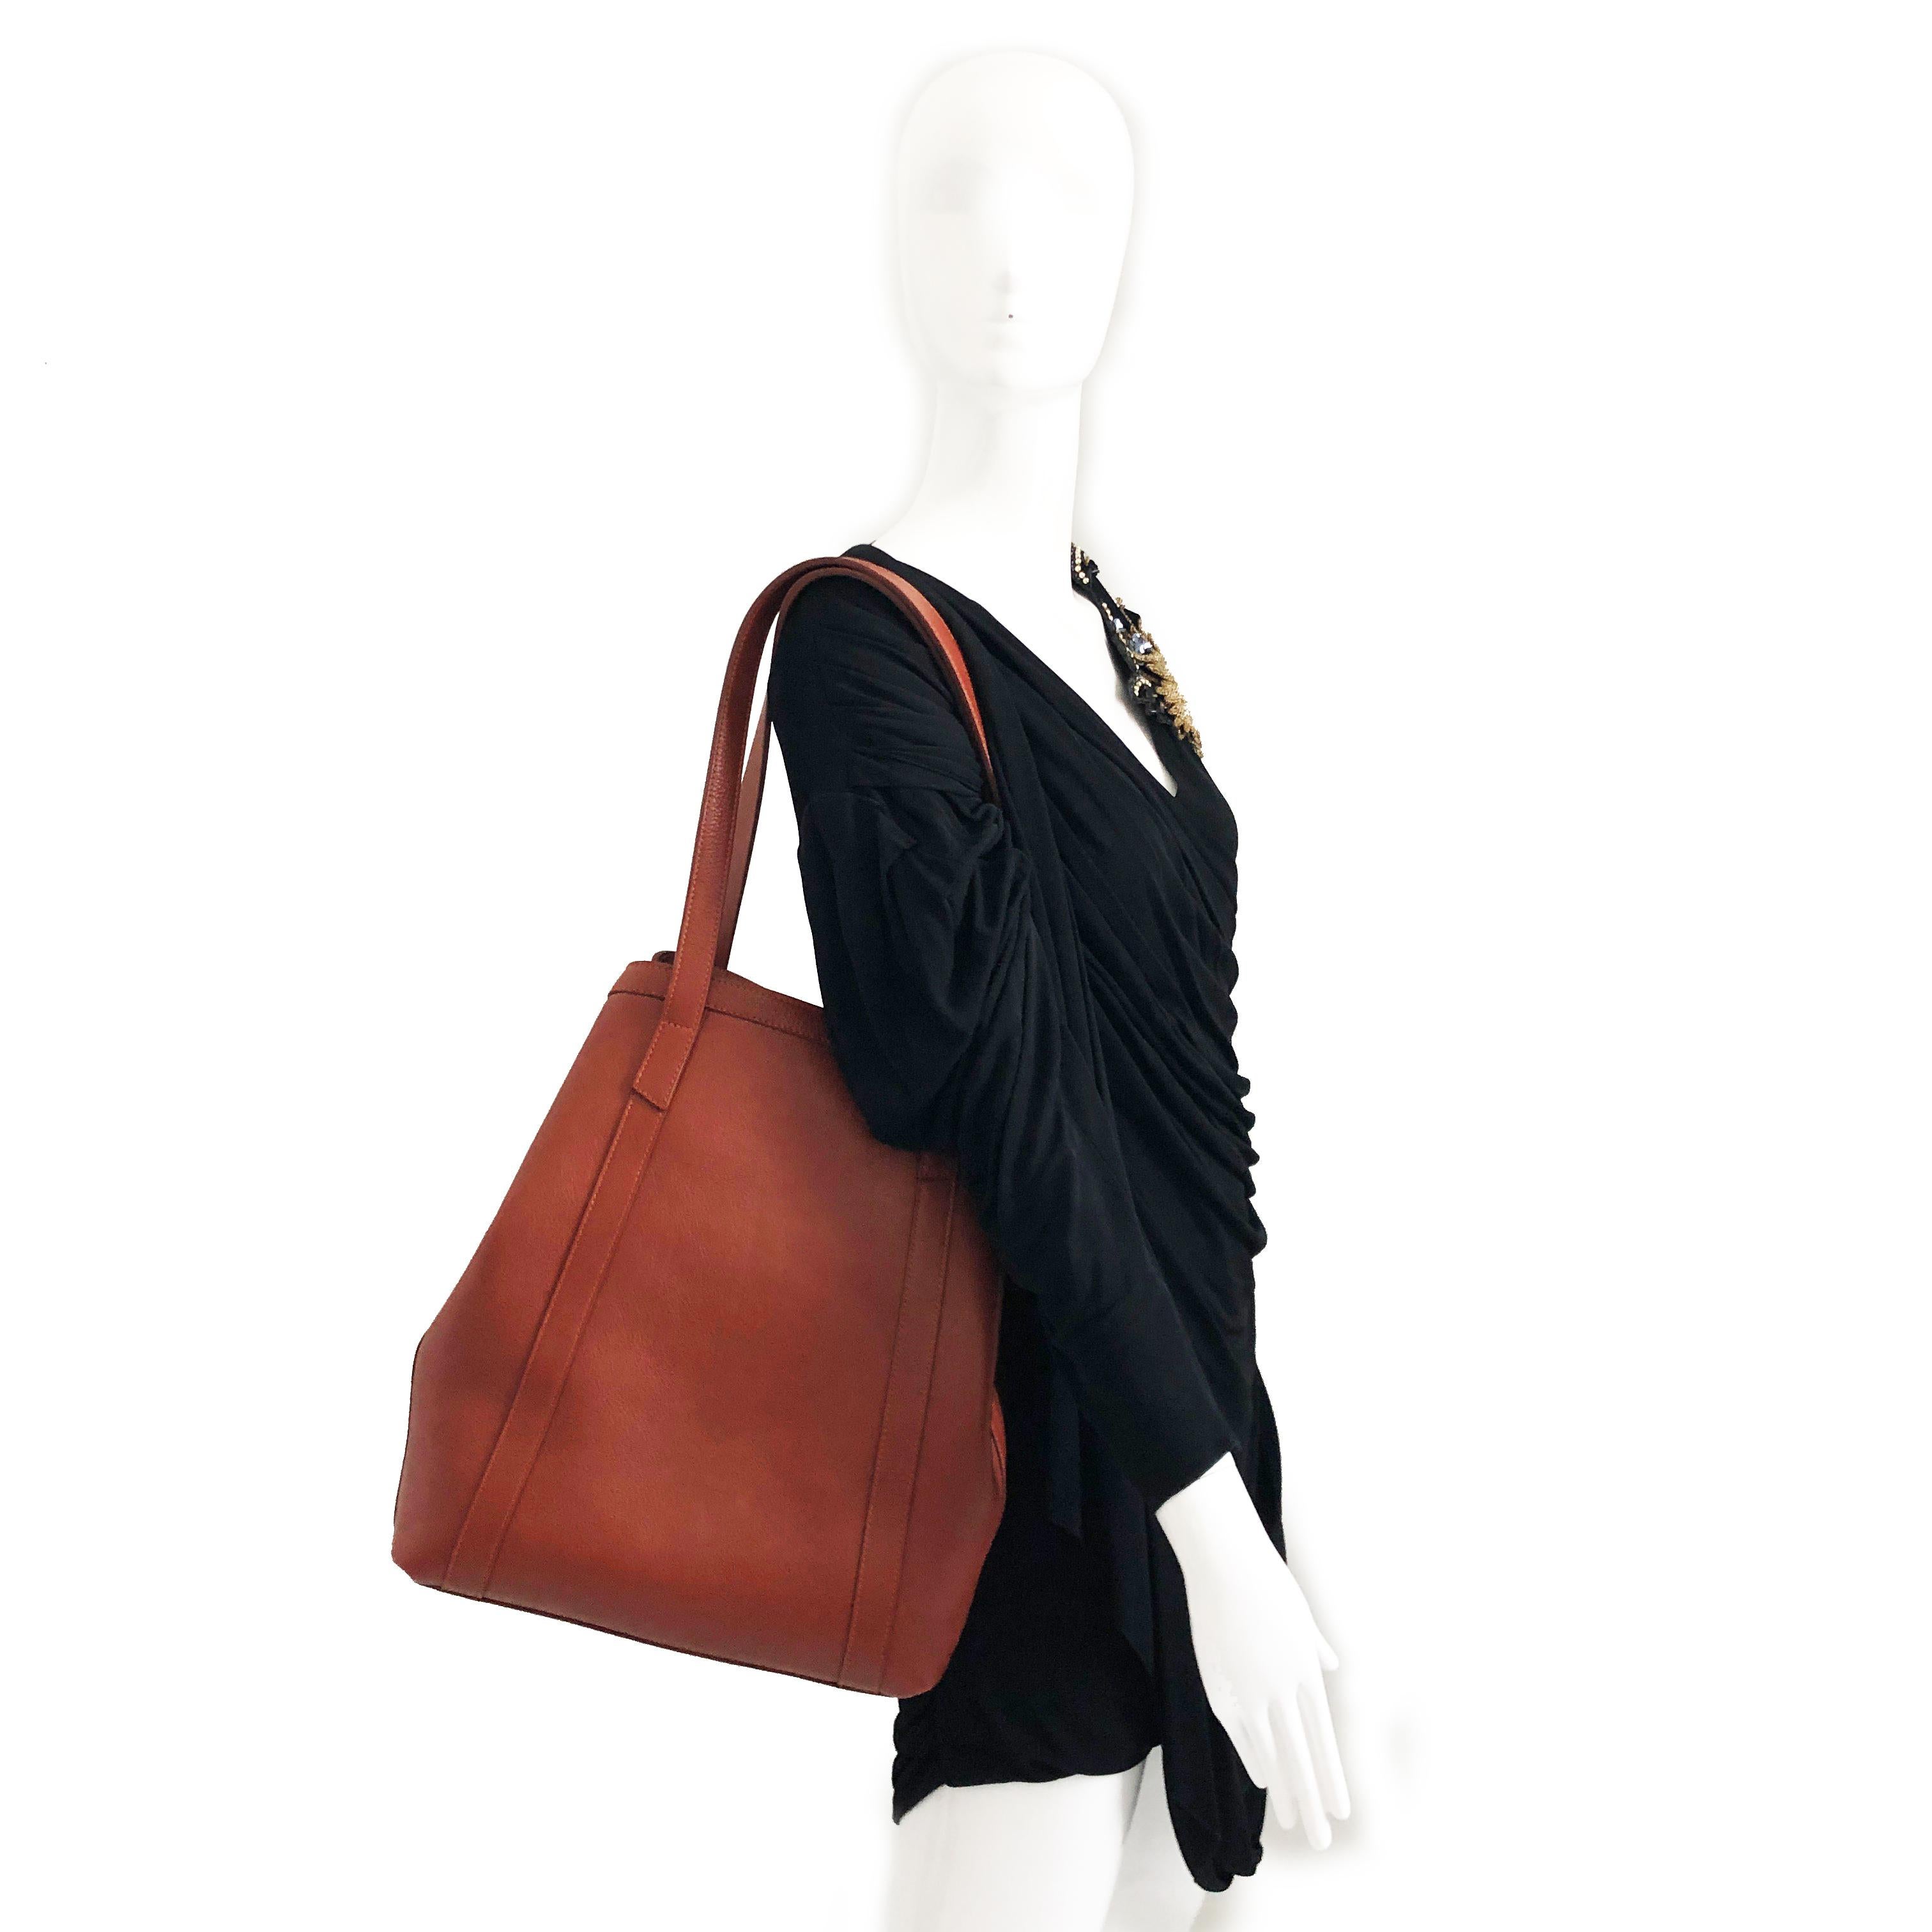 Women's Lotuff Leather Angle Tote Bag Saddle Tan XL Travel Bag 